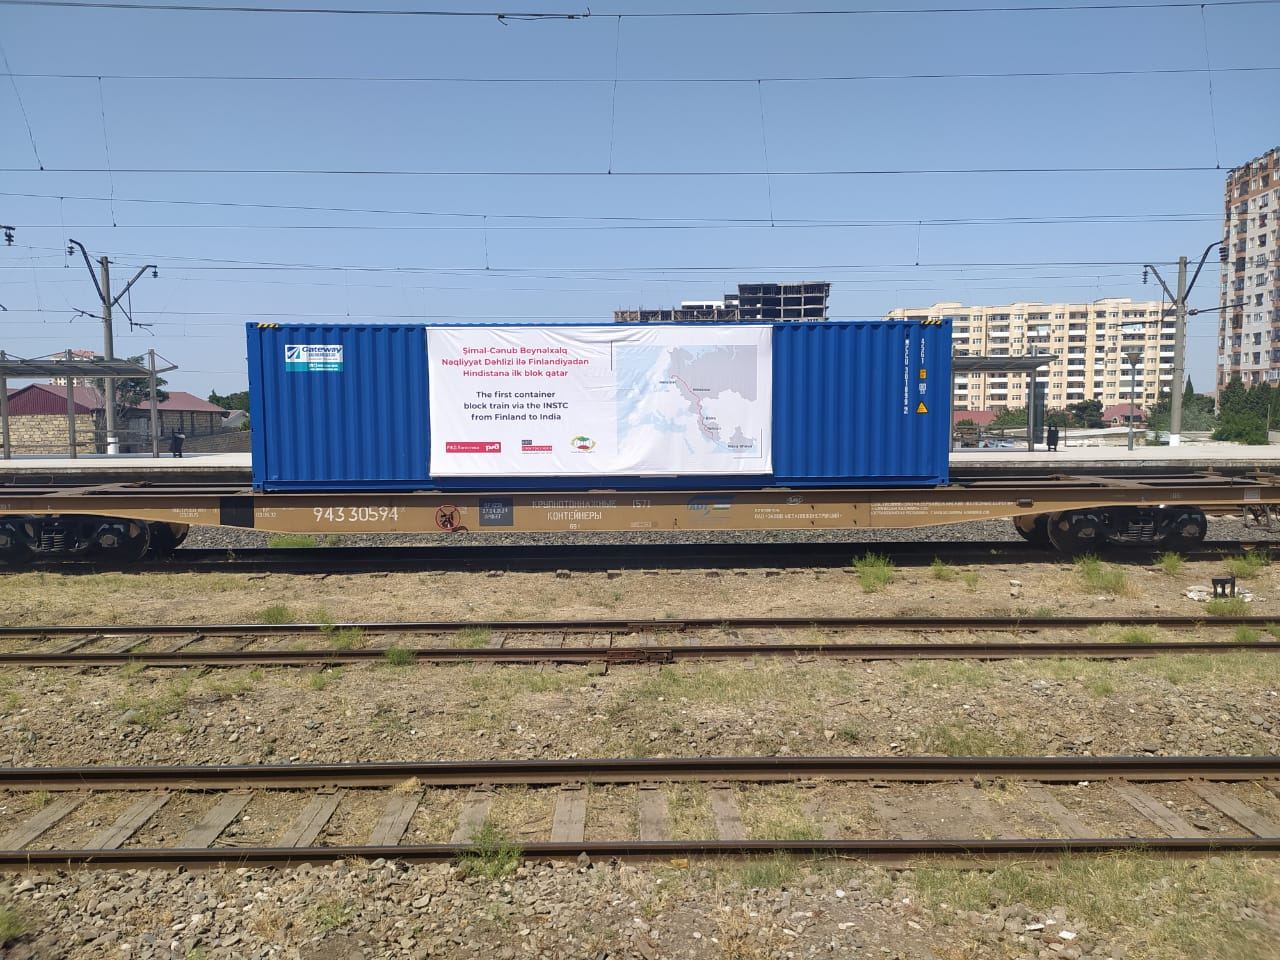 В Азербайджан прибыл первый маршрутный поезд по коридору «Север – Юг» (ФОТО)